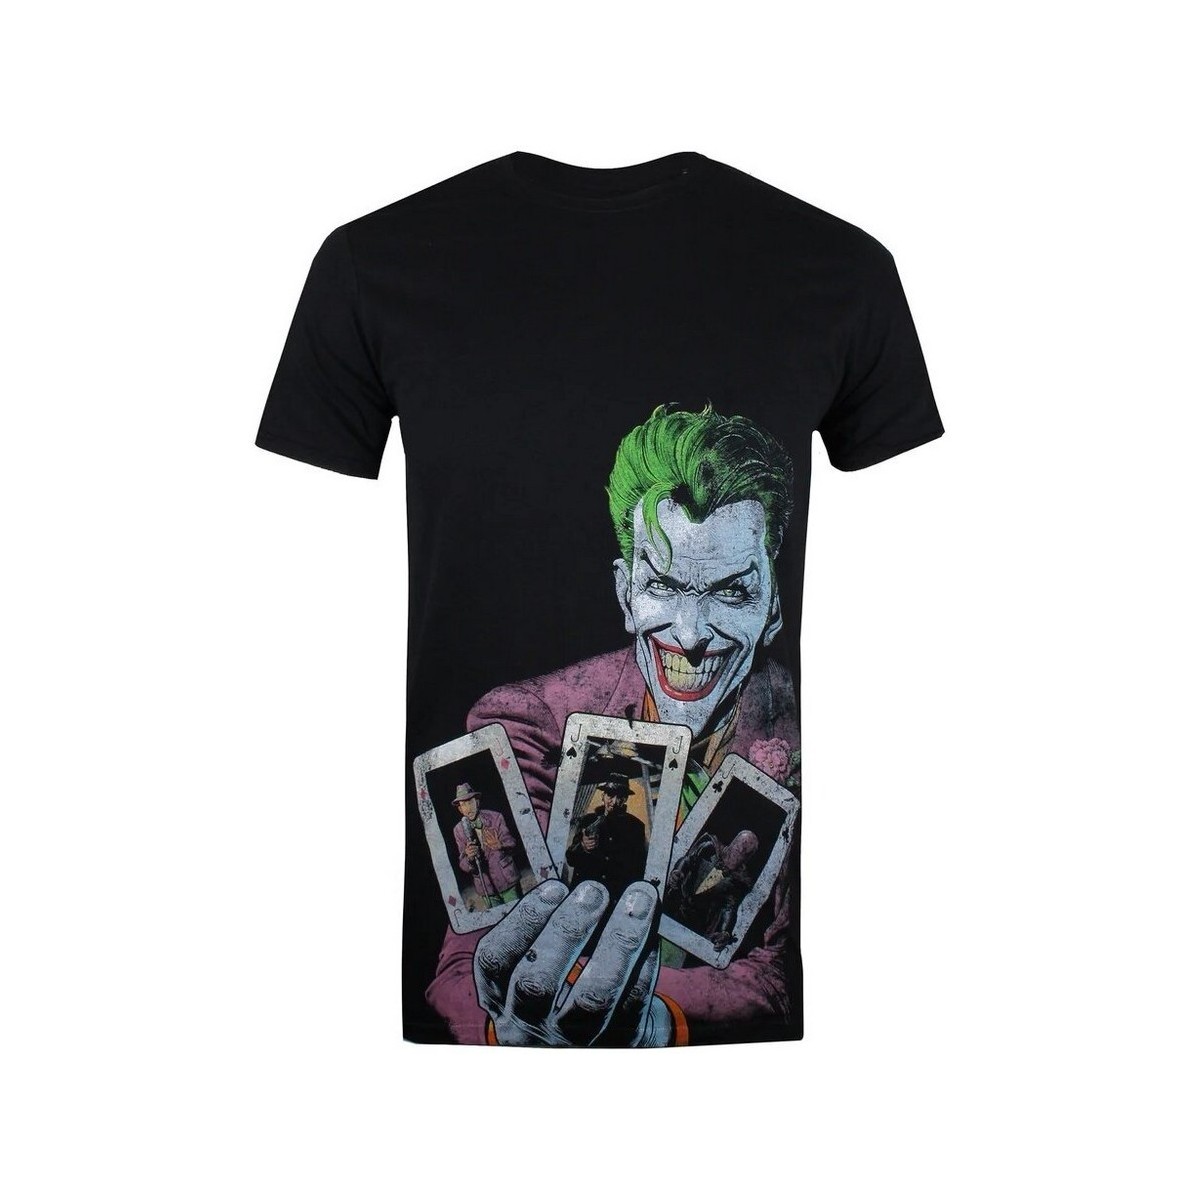 Vêtements Homme T-shirts manches longues The Joker Full House Noir